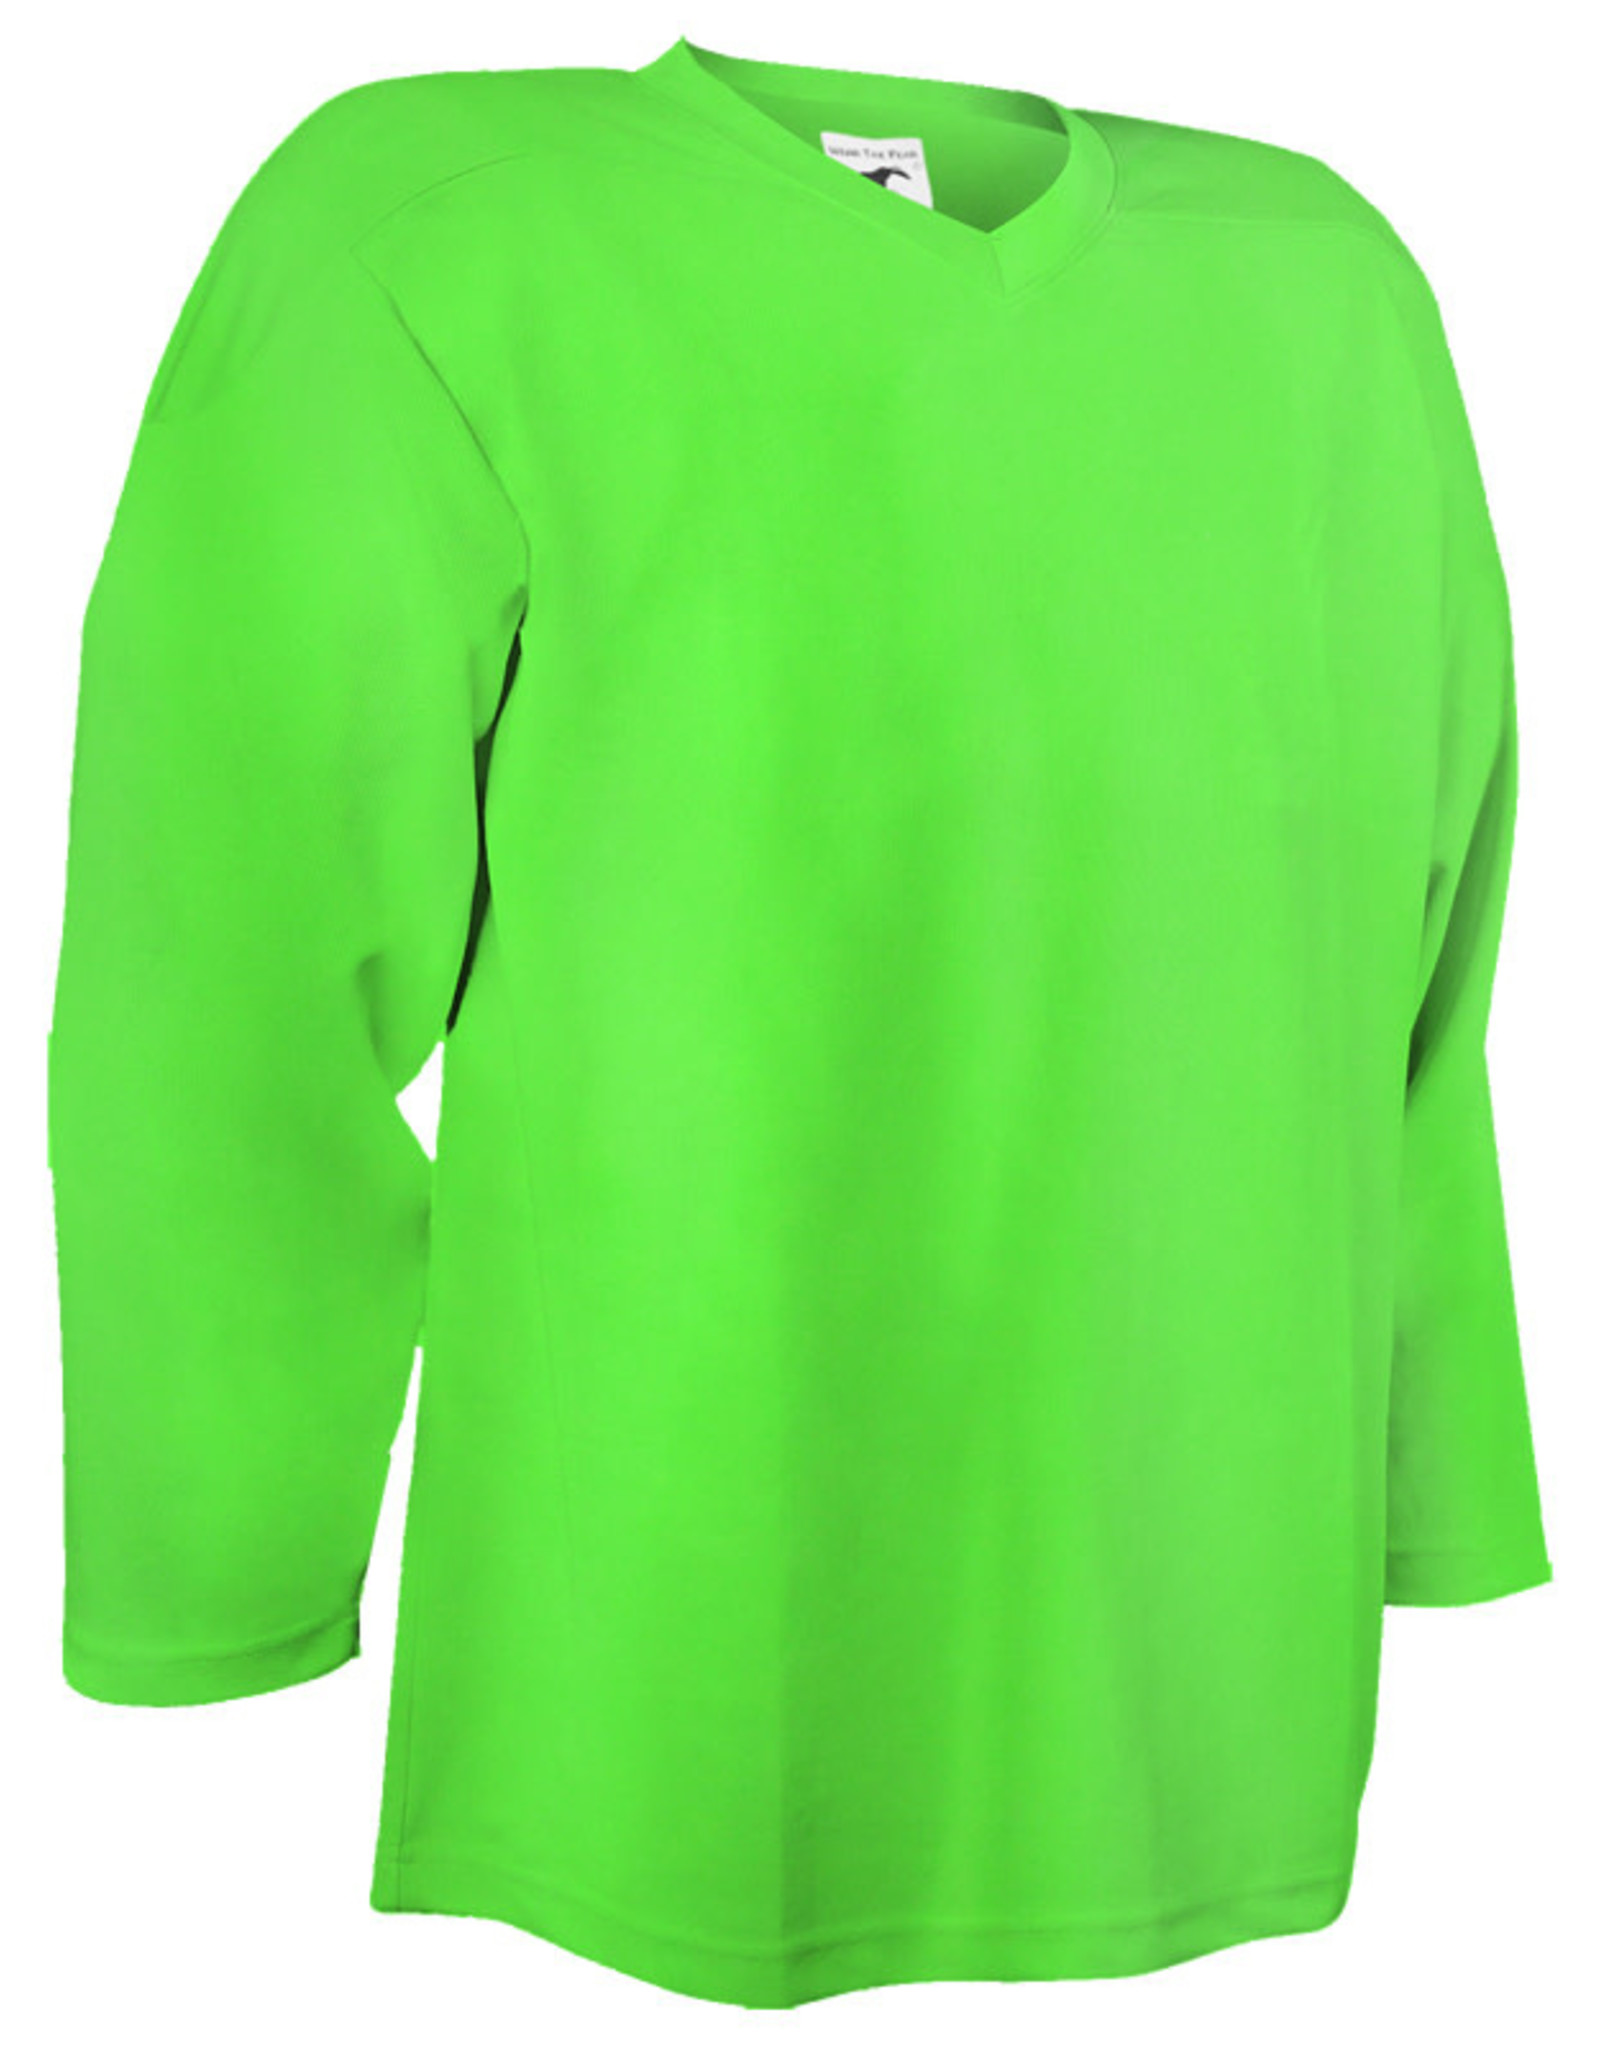 sox green jerseys